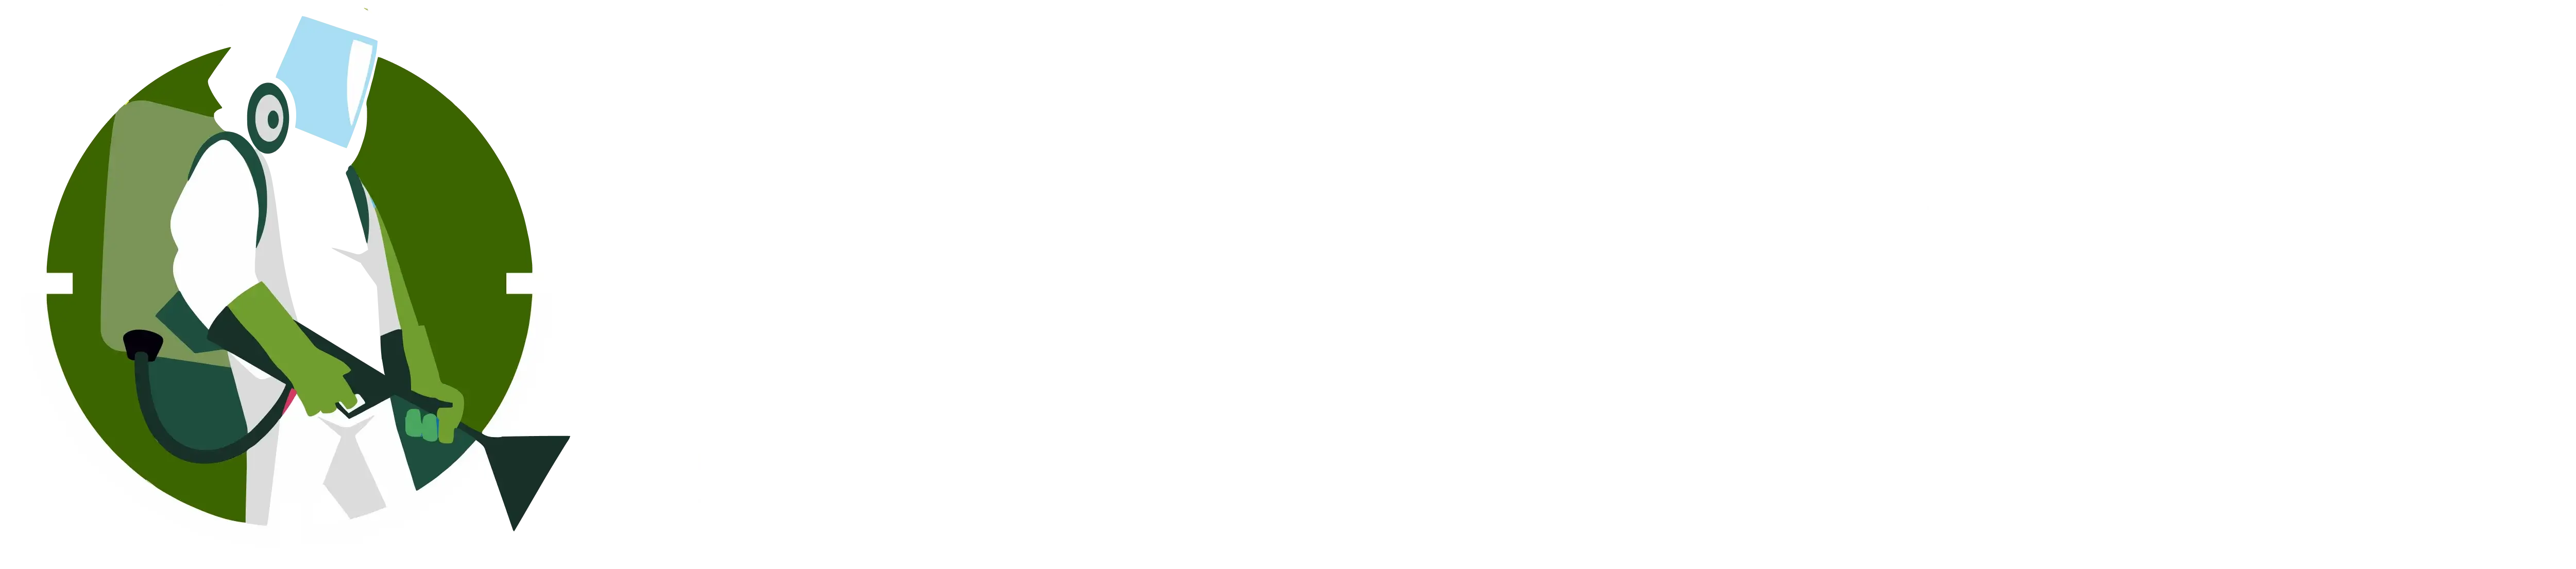 eastmedow logo